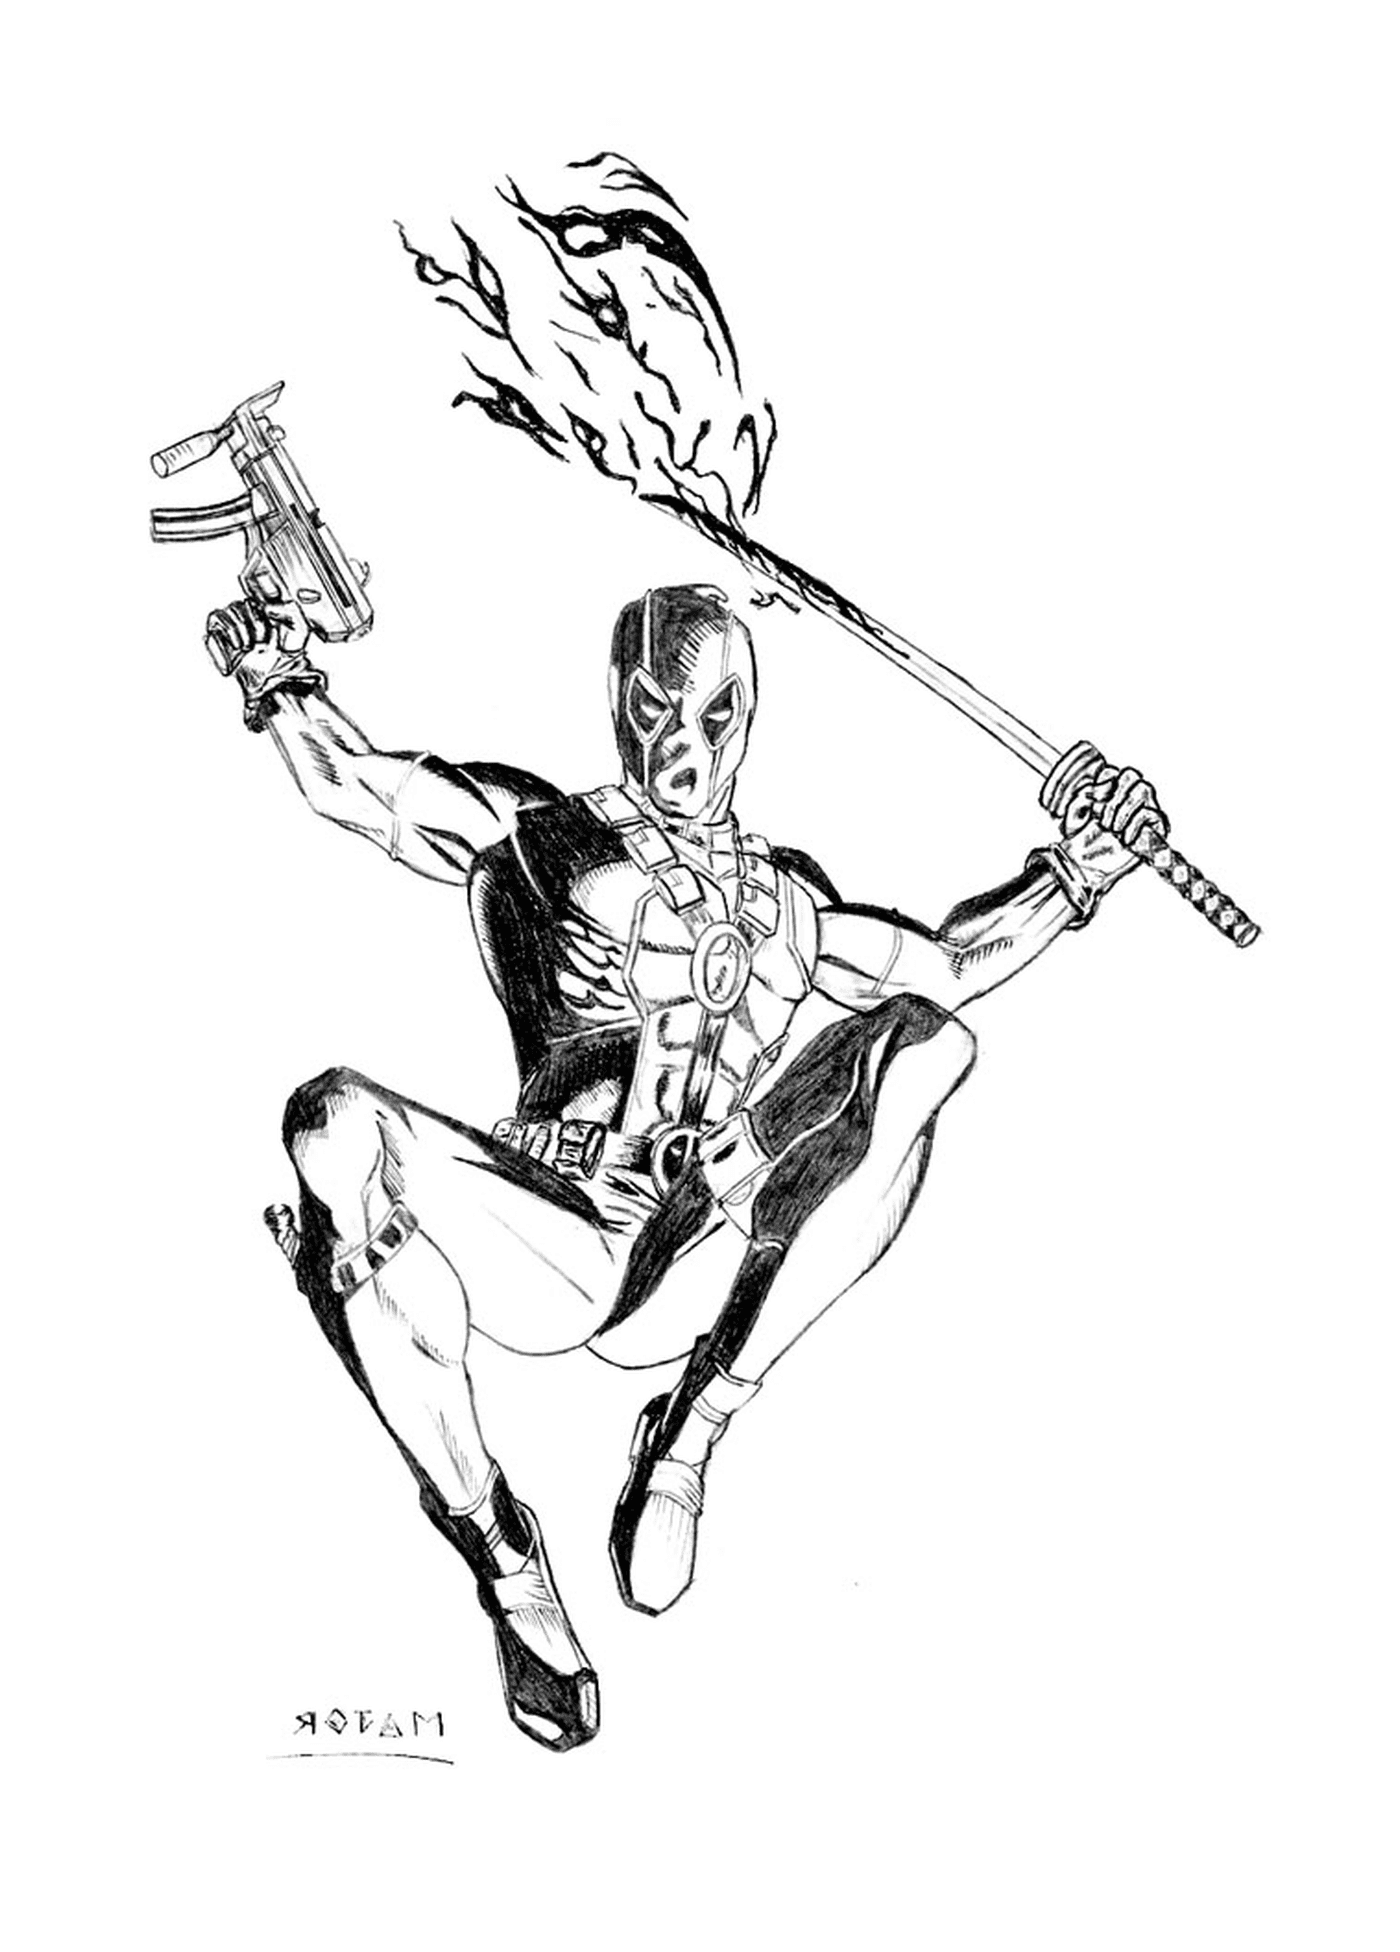  Deadpool sosteniendo un rifle y una espada 